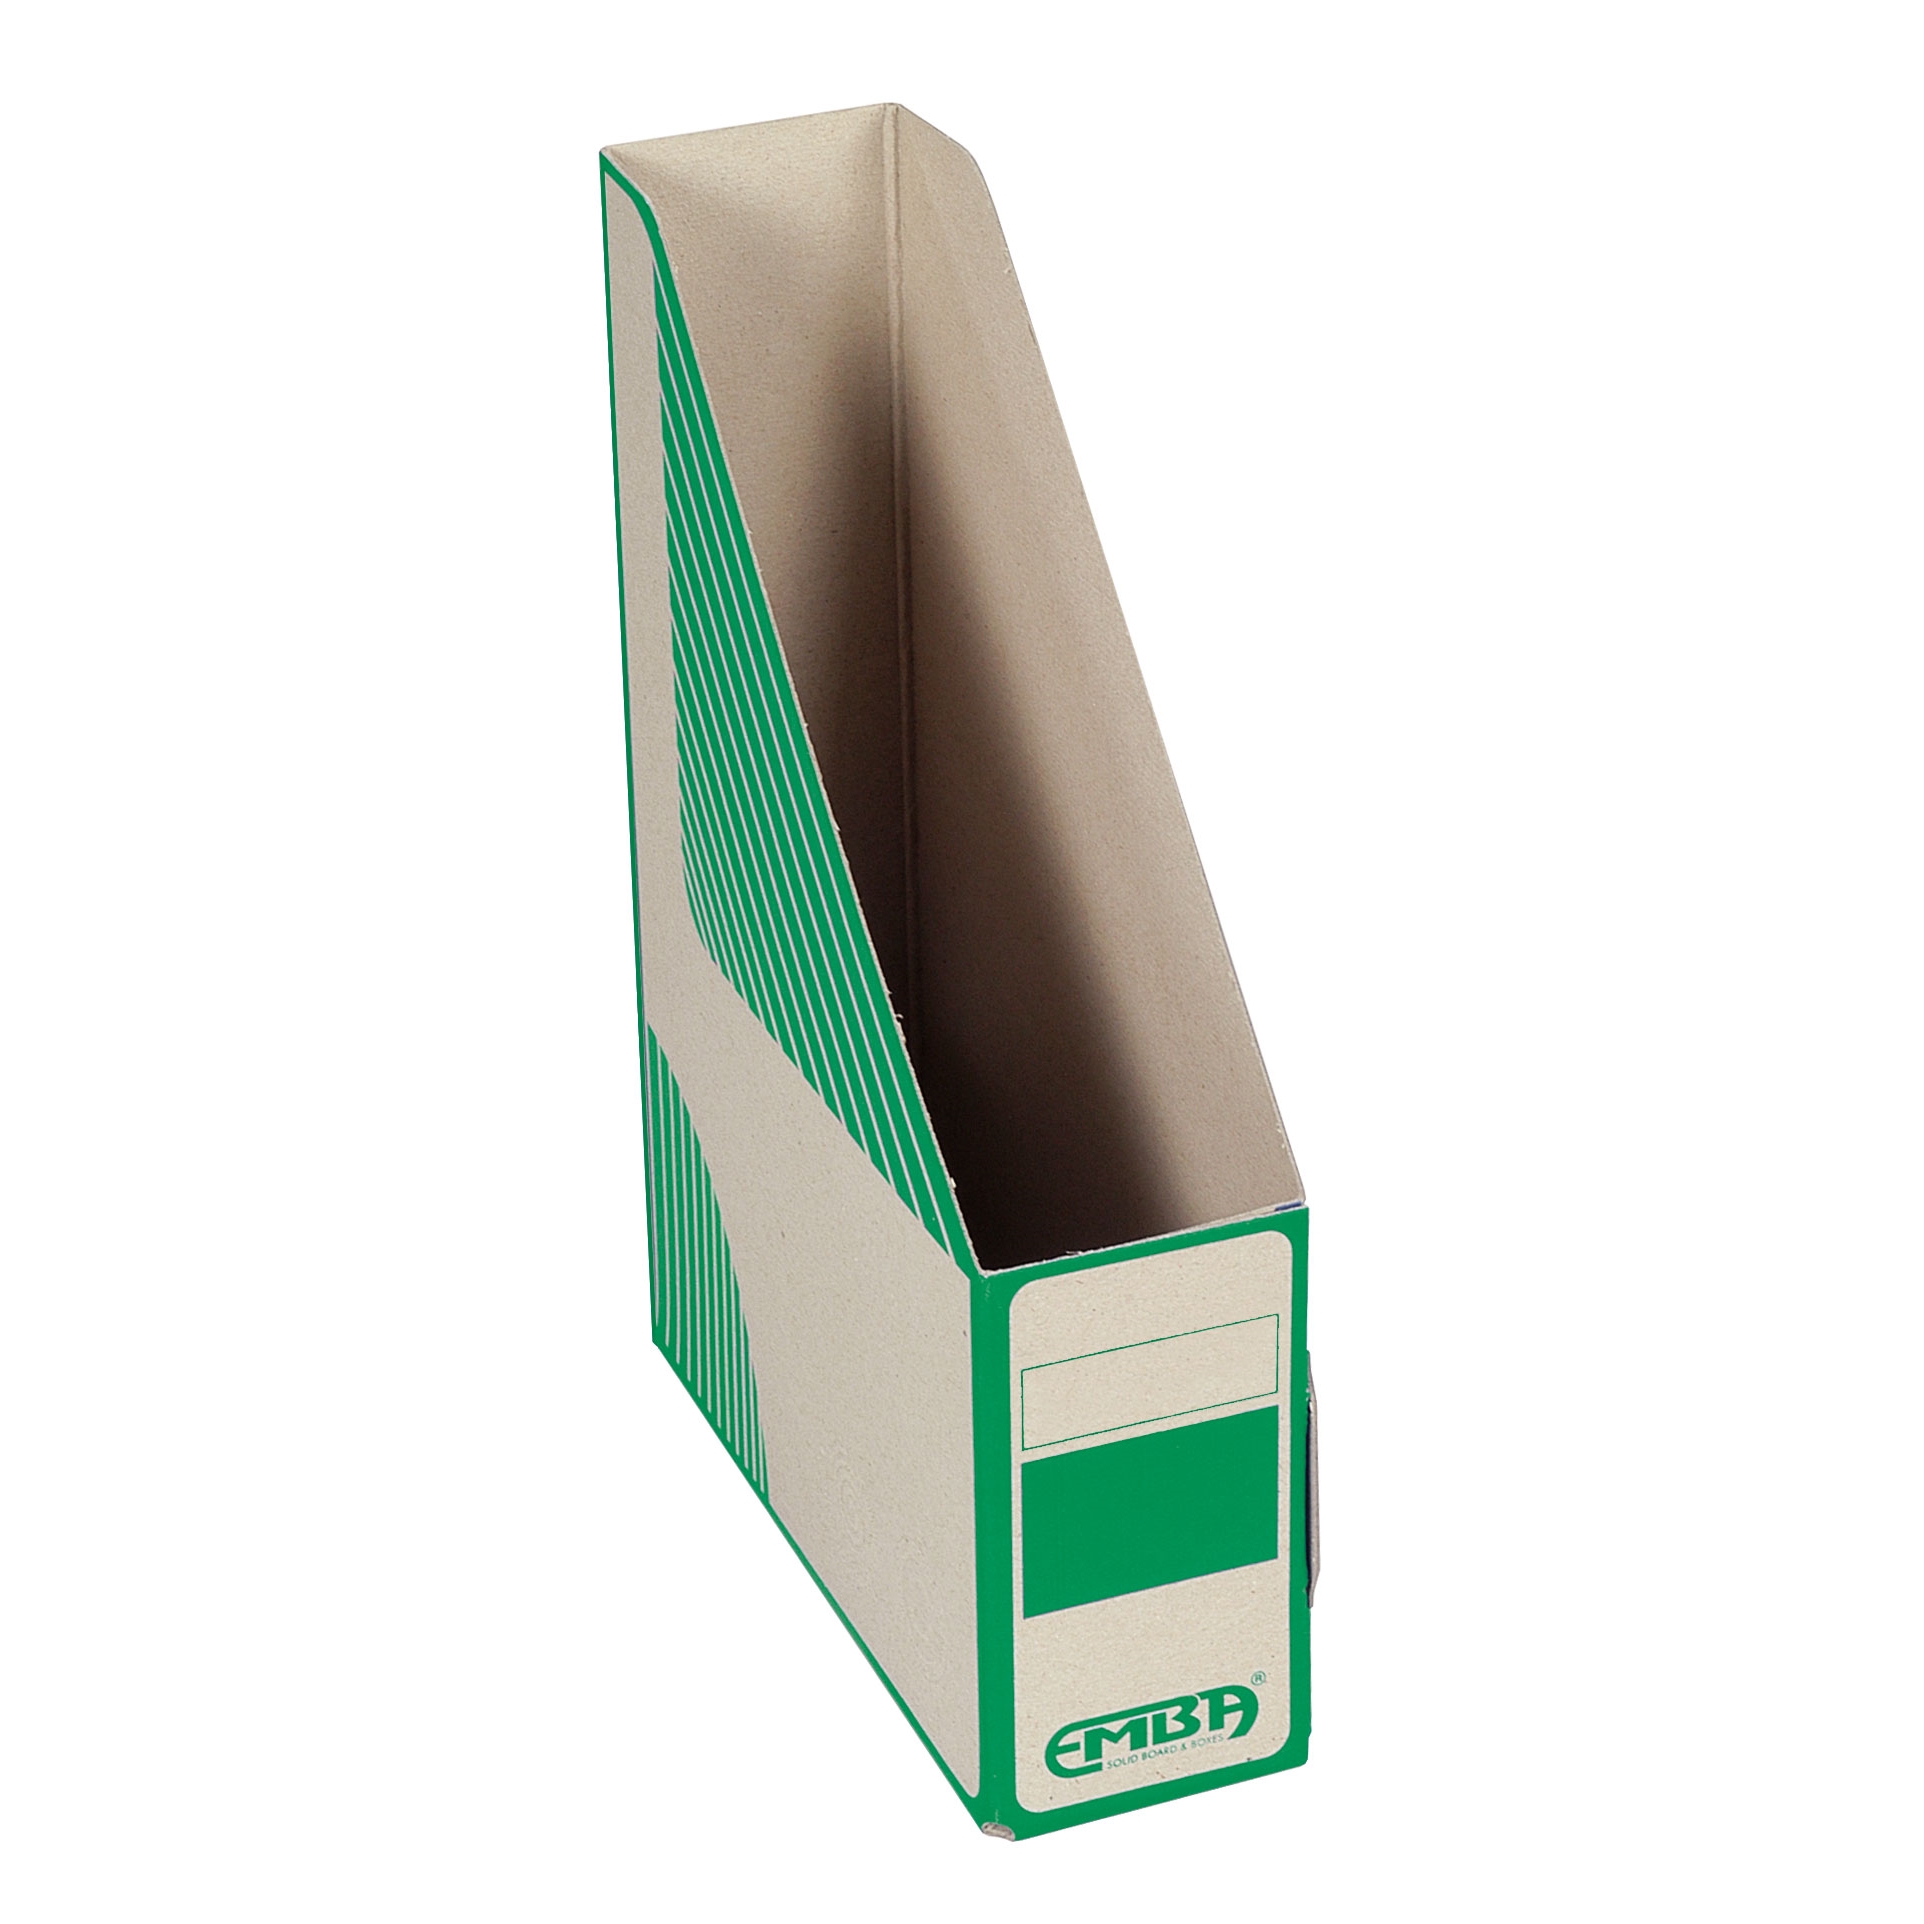 Dokument box Emba 330-230-75, kartonový, zelená